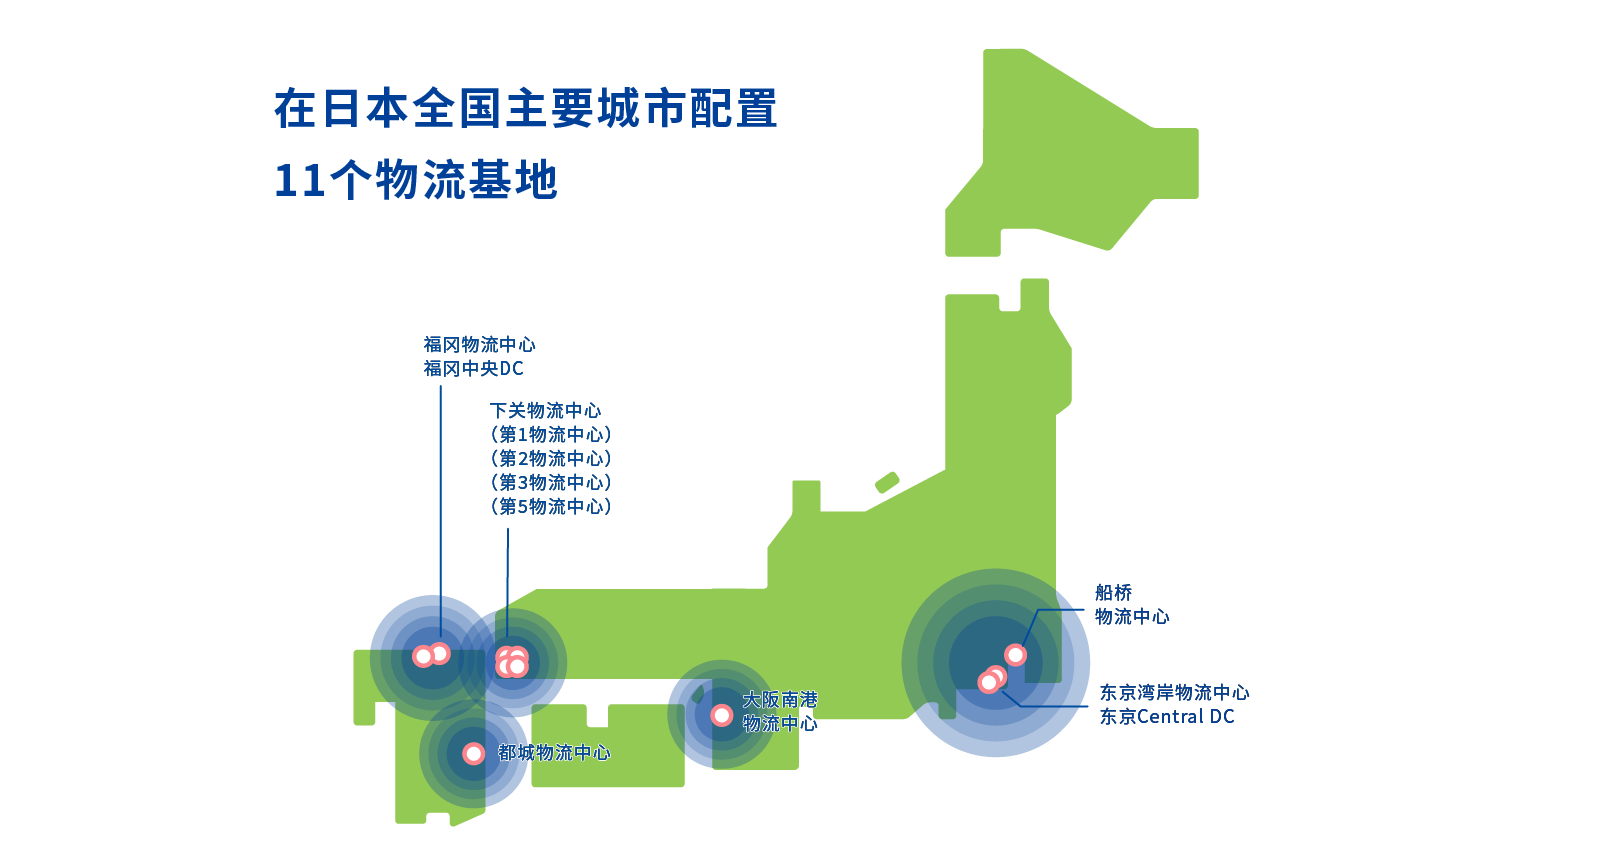 在日本全国主要城市配置11个物流基地